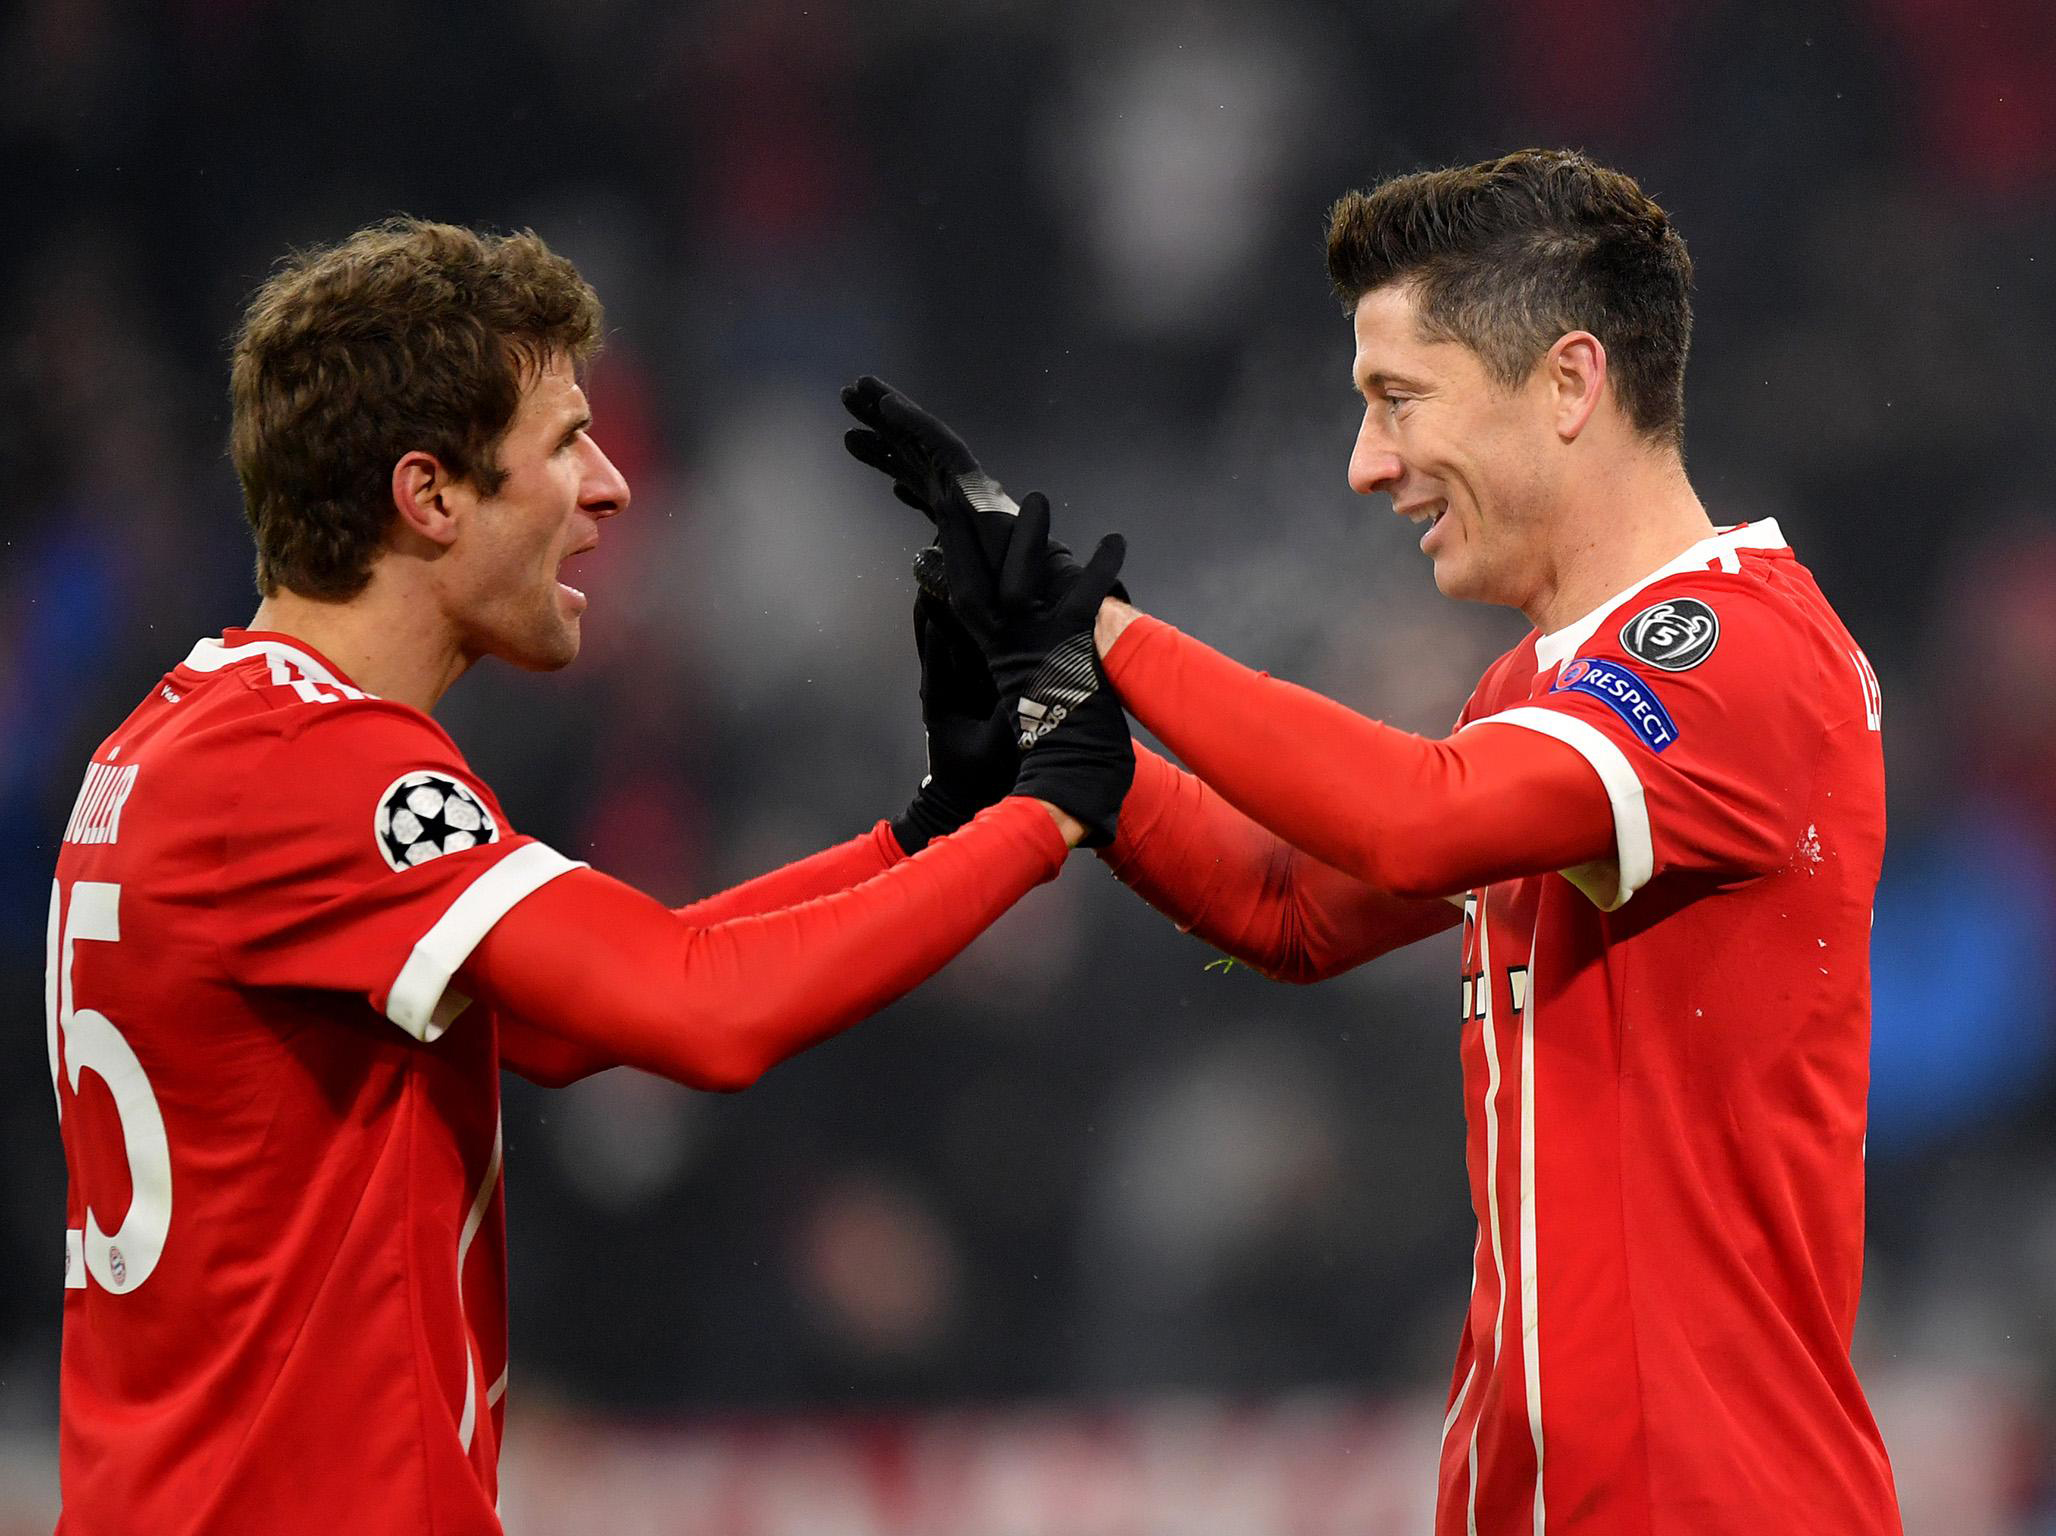 Chờ bản lĩnh của nhà vô địch Bayern Munich